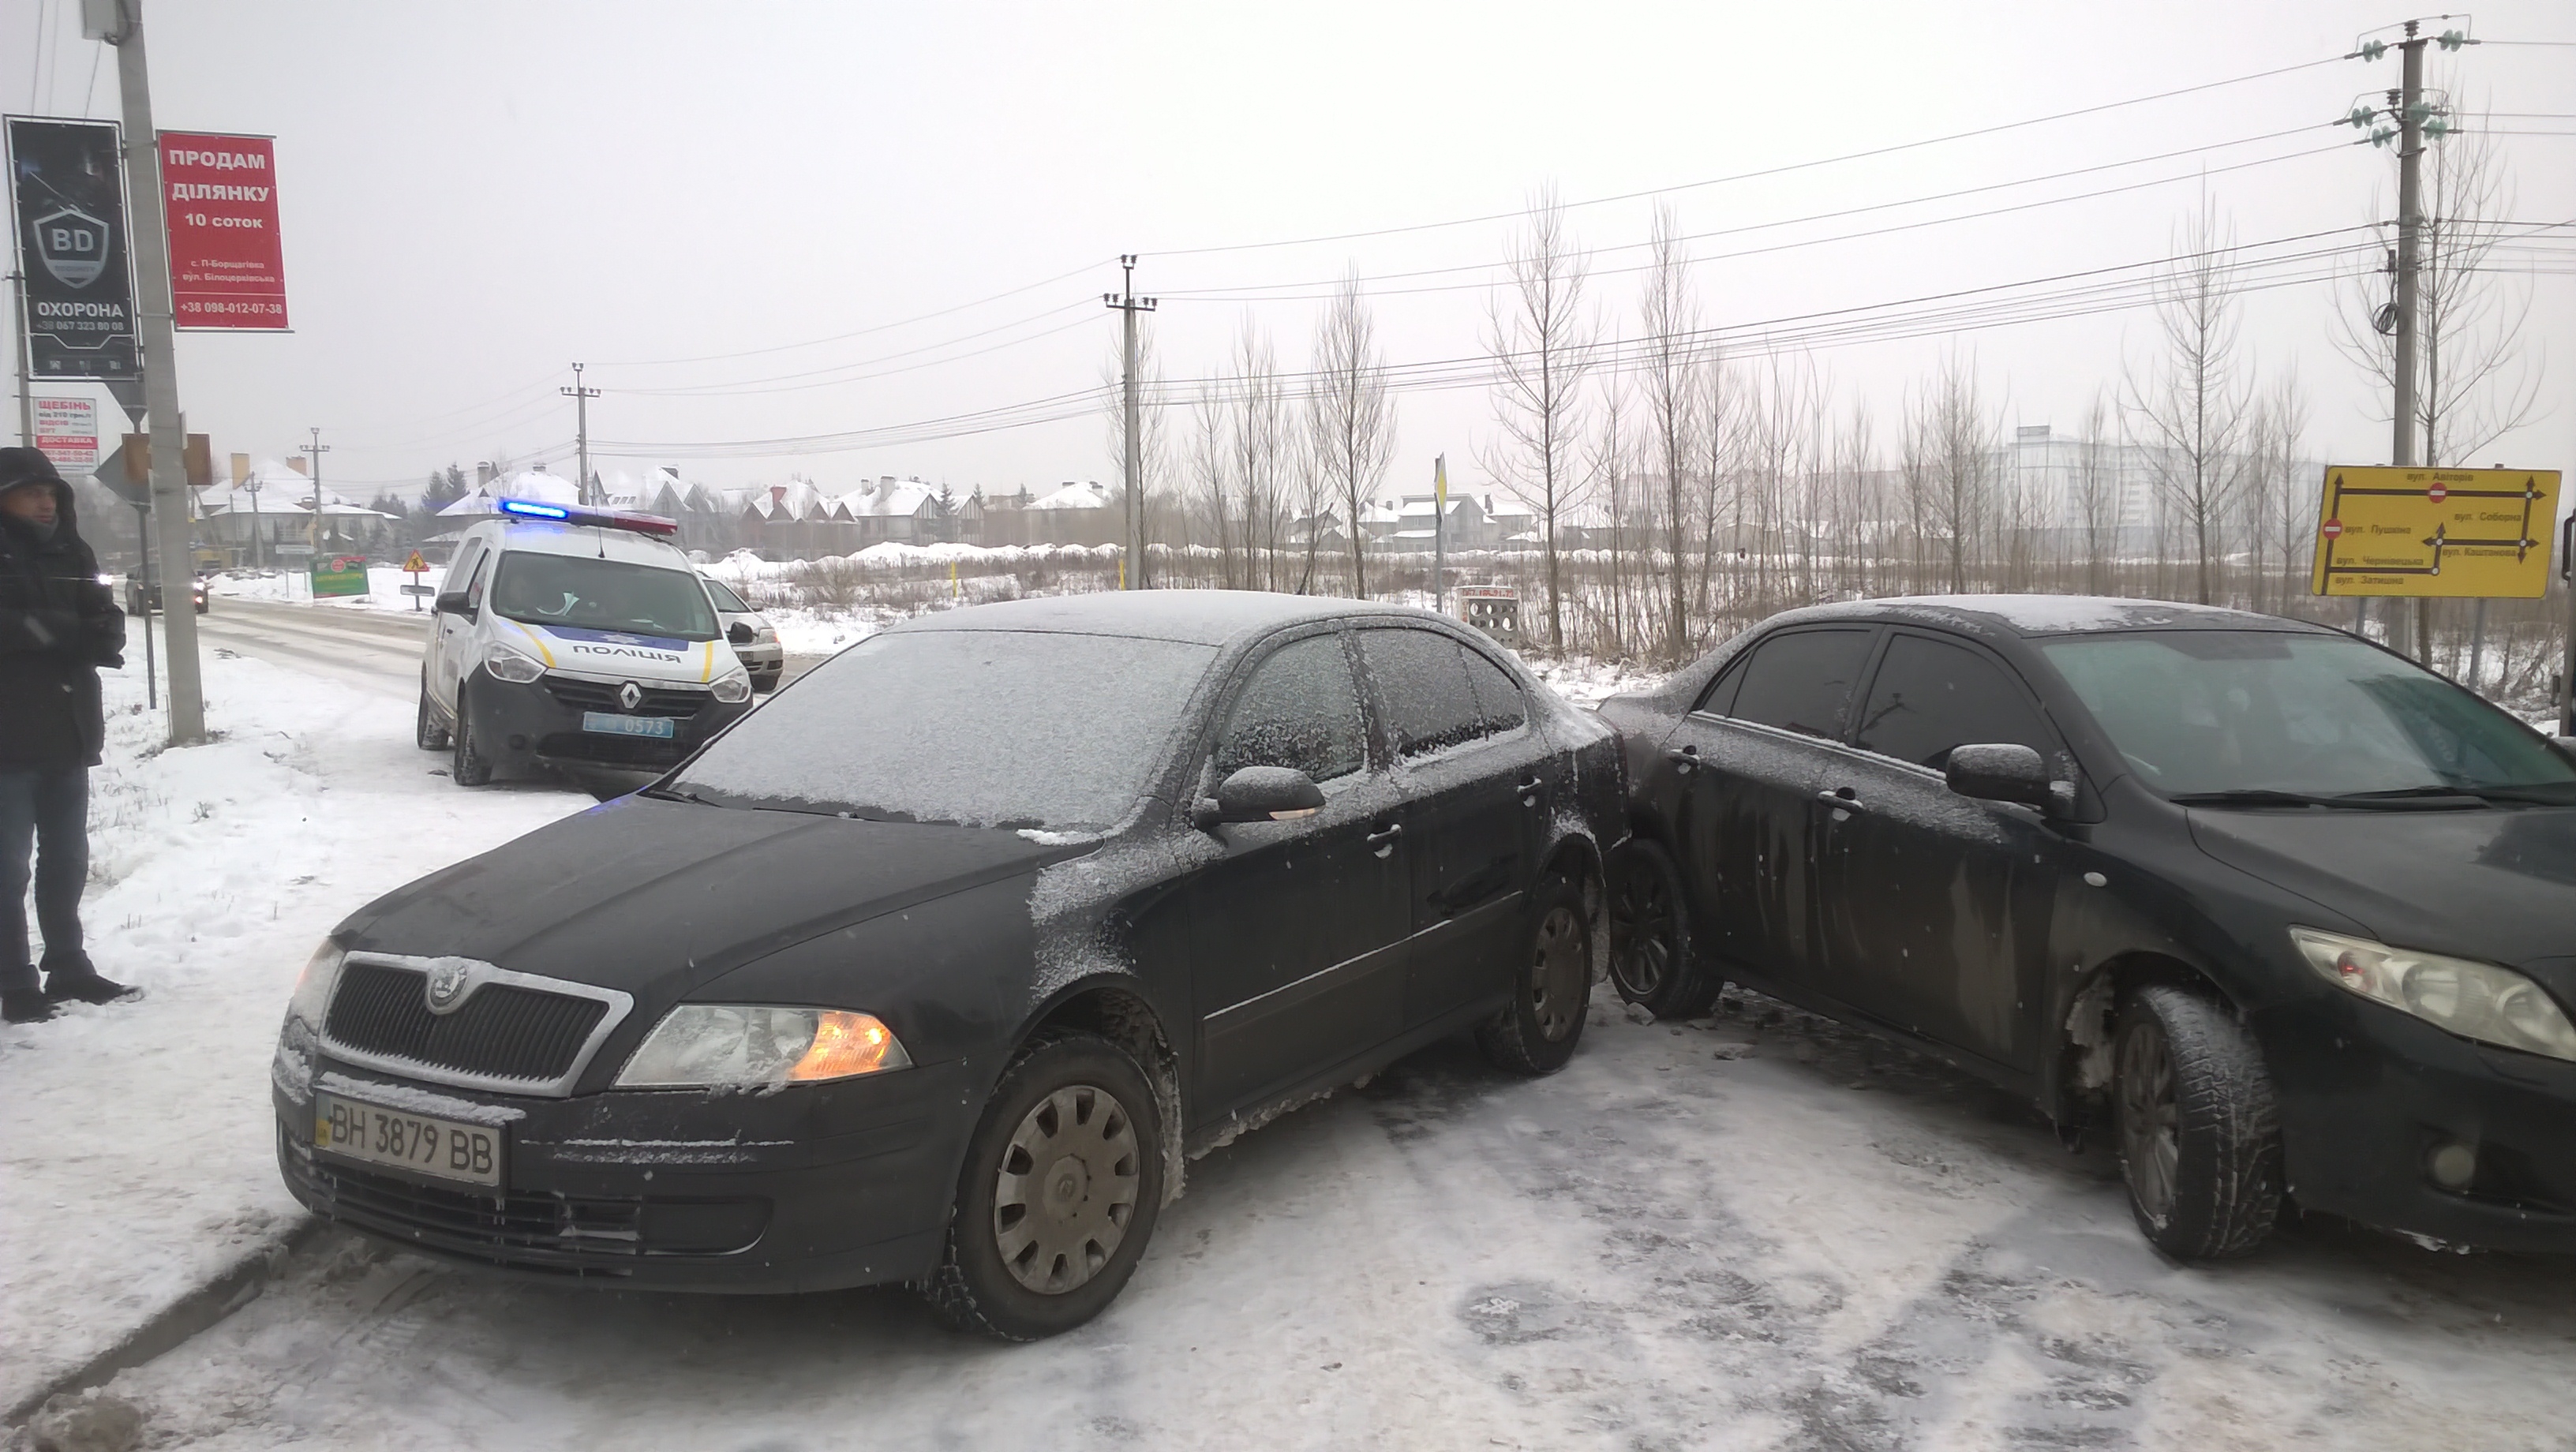 Нечищена дорога 2: нова аварія через сніг на вчорашньому місці під Києвом (ФОТО)